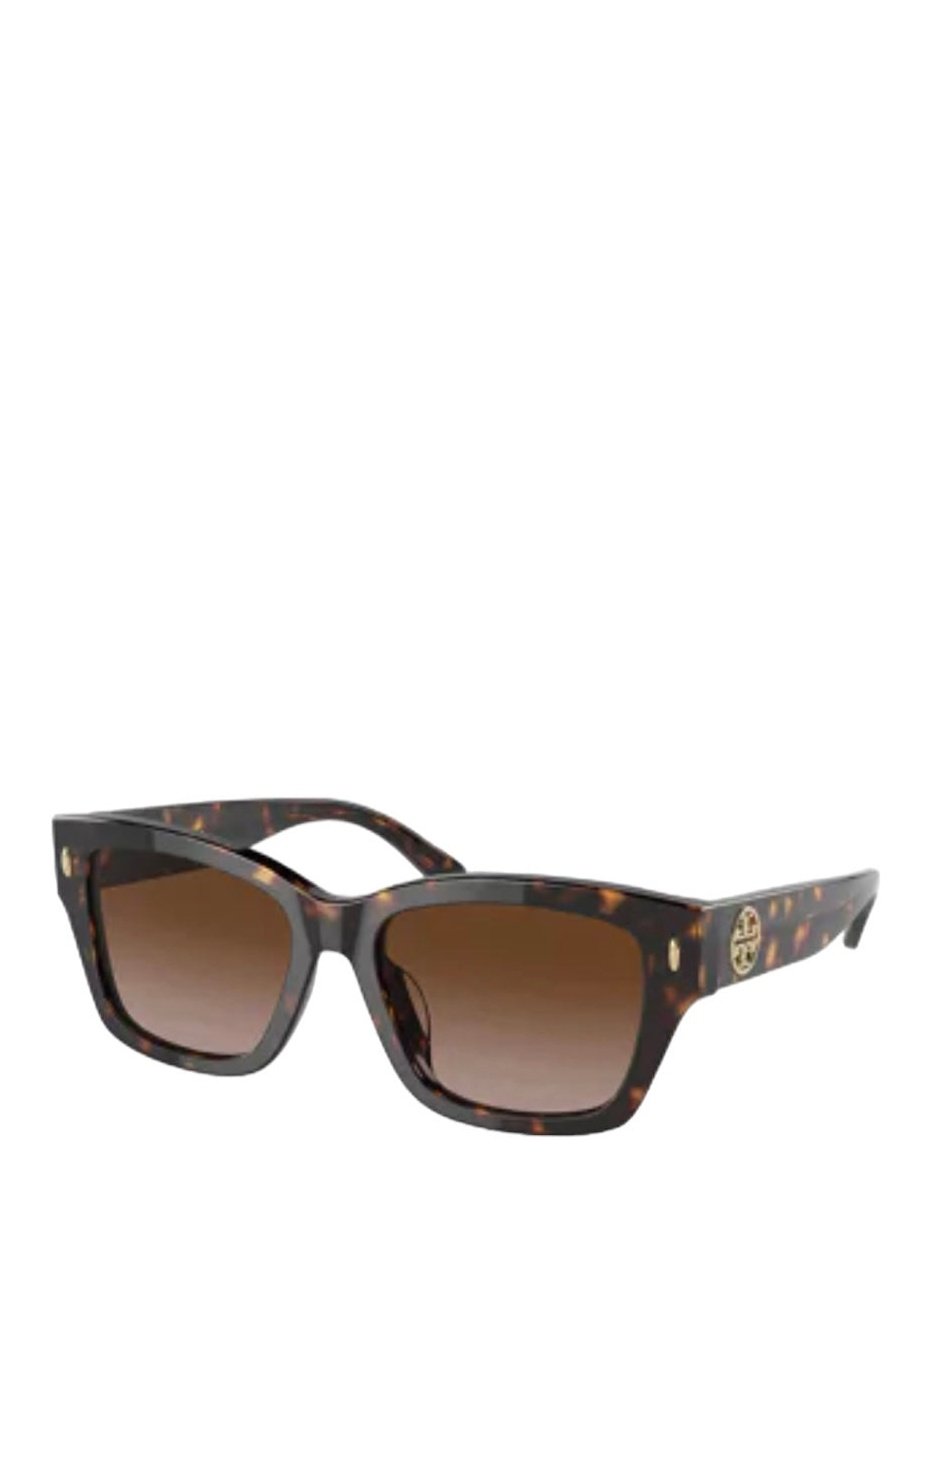 Tory Burch Women's sunglasses Dark Tortoise/Brown